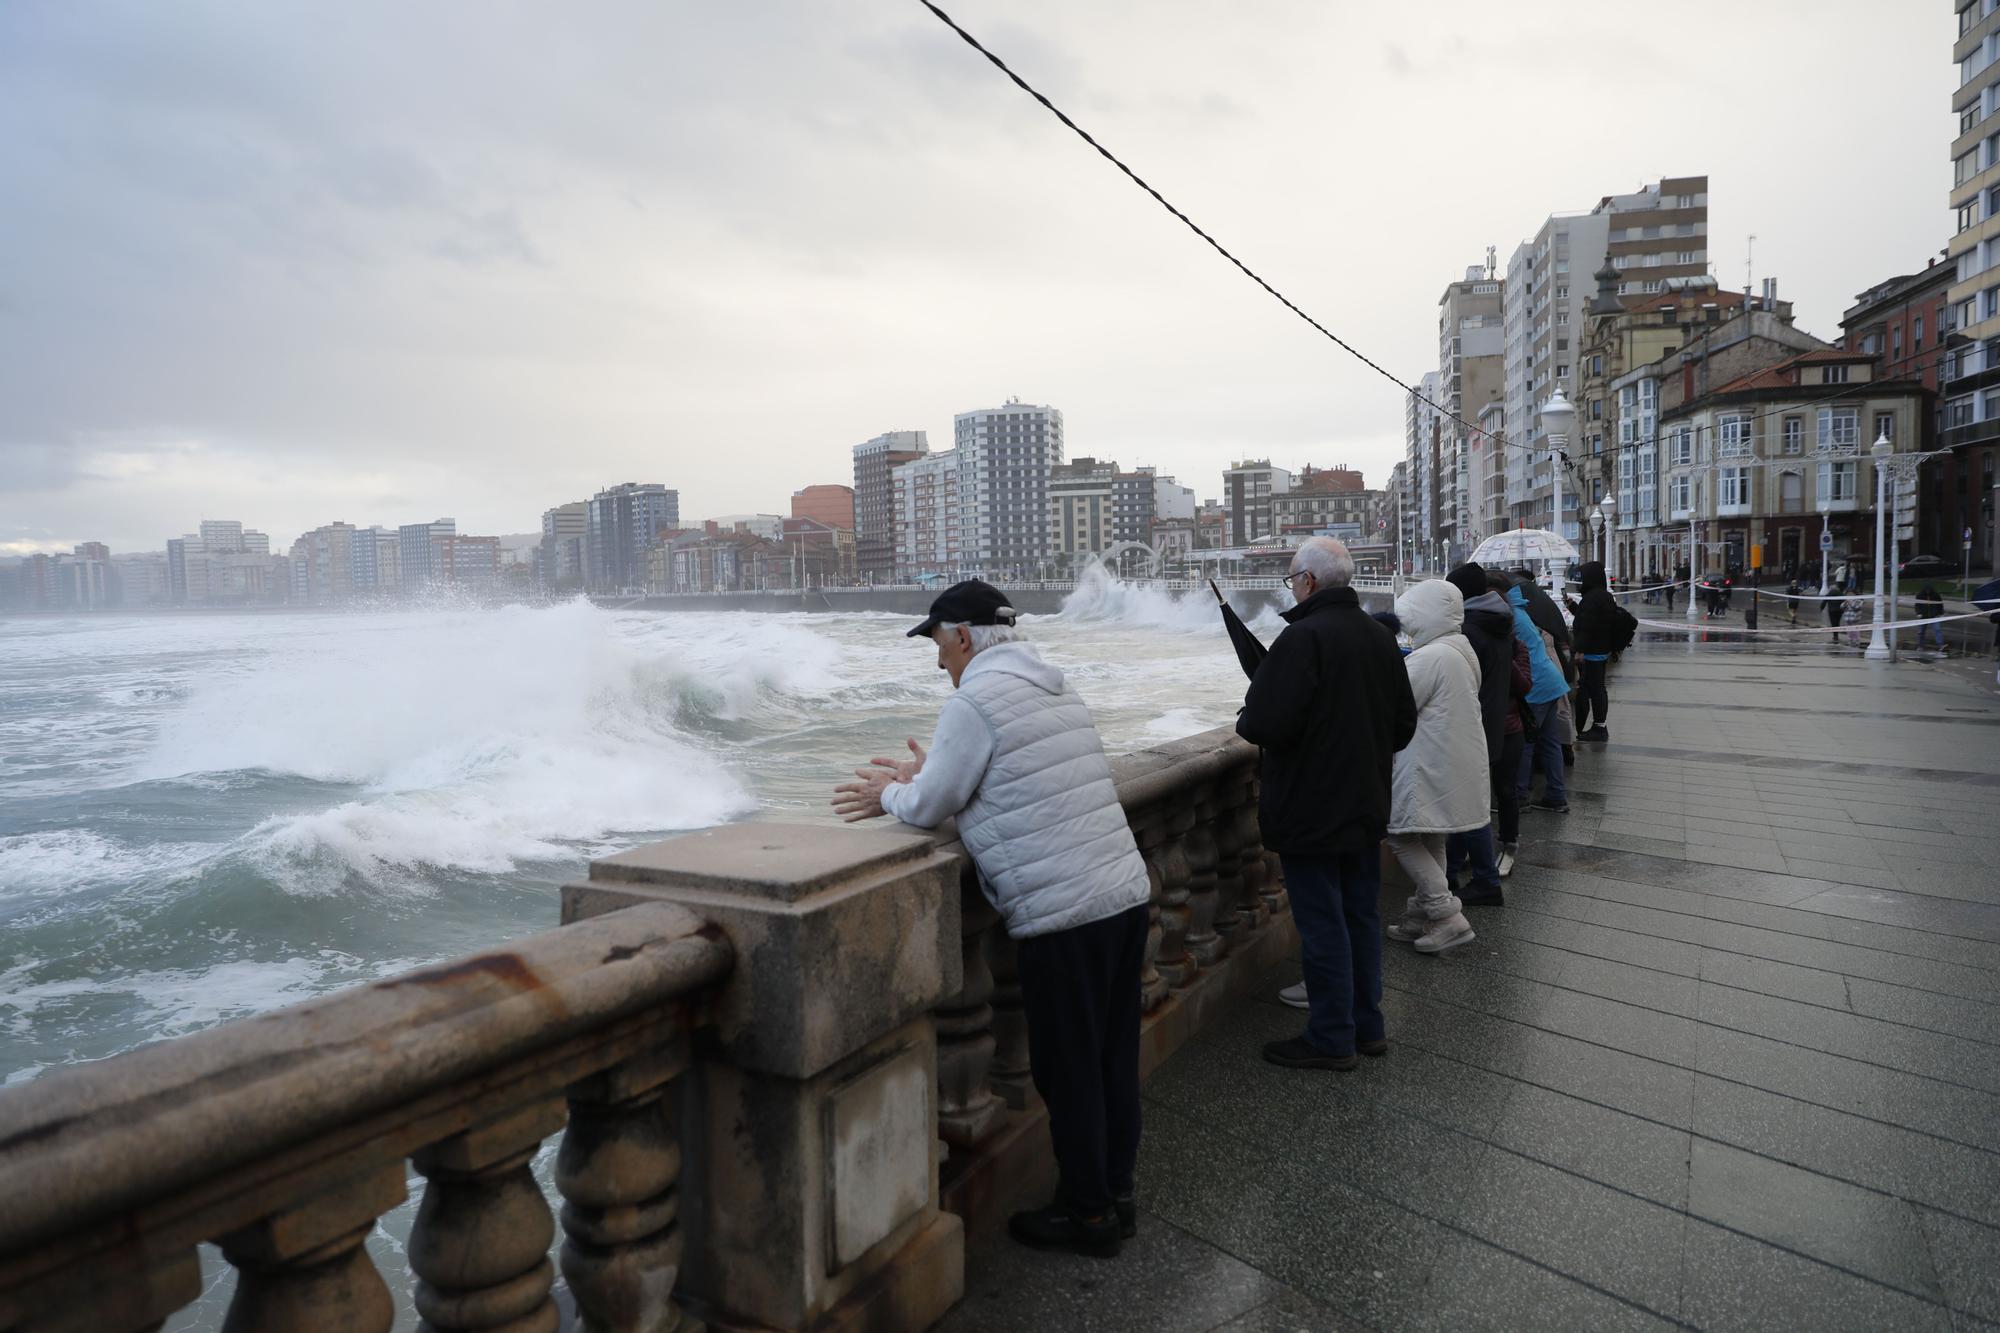 Termporal de oleaje en Asturias, así batían las olas en el muro de San Lorenzo en Gijón